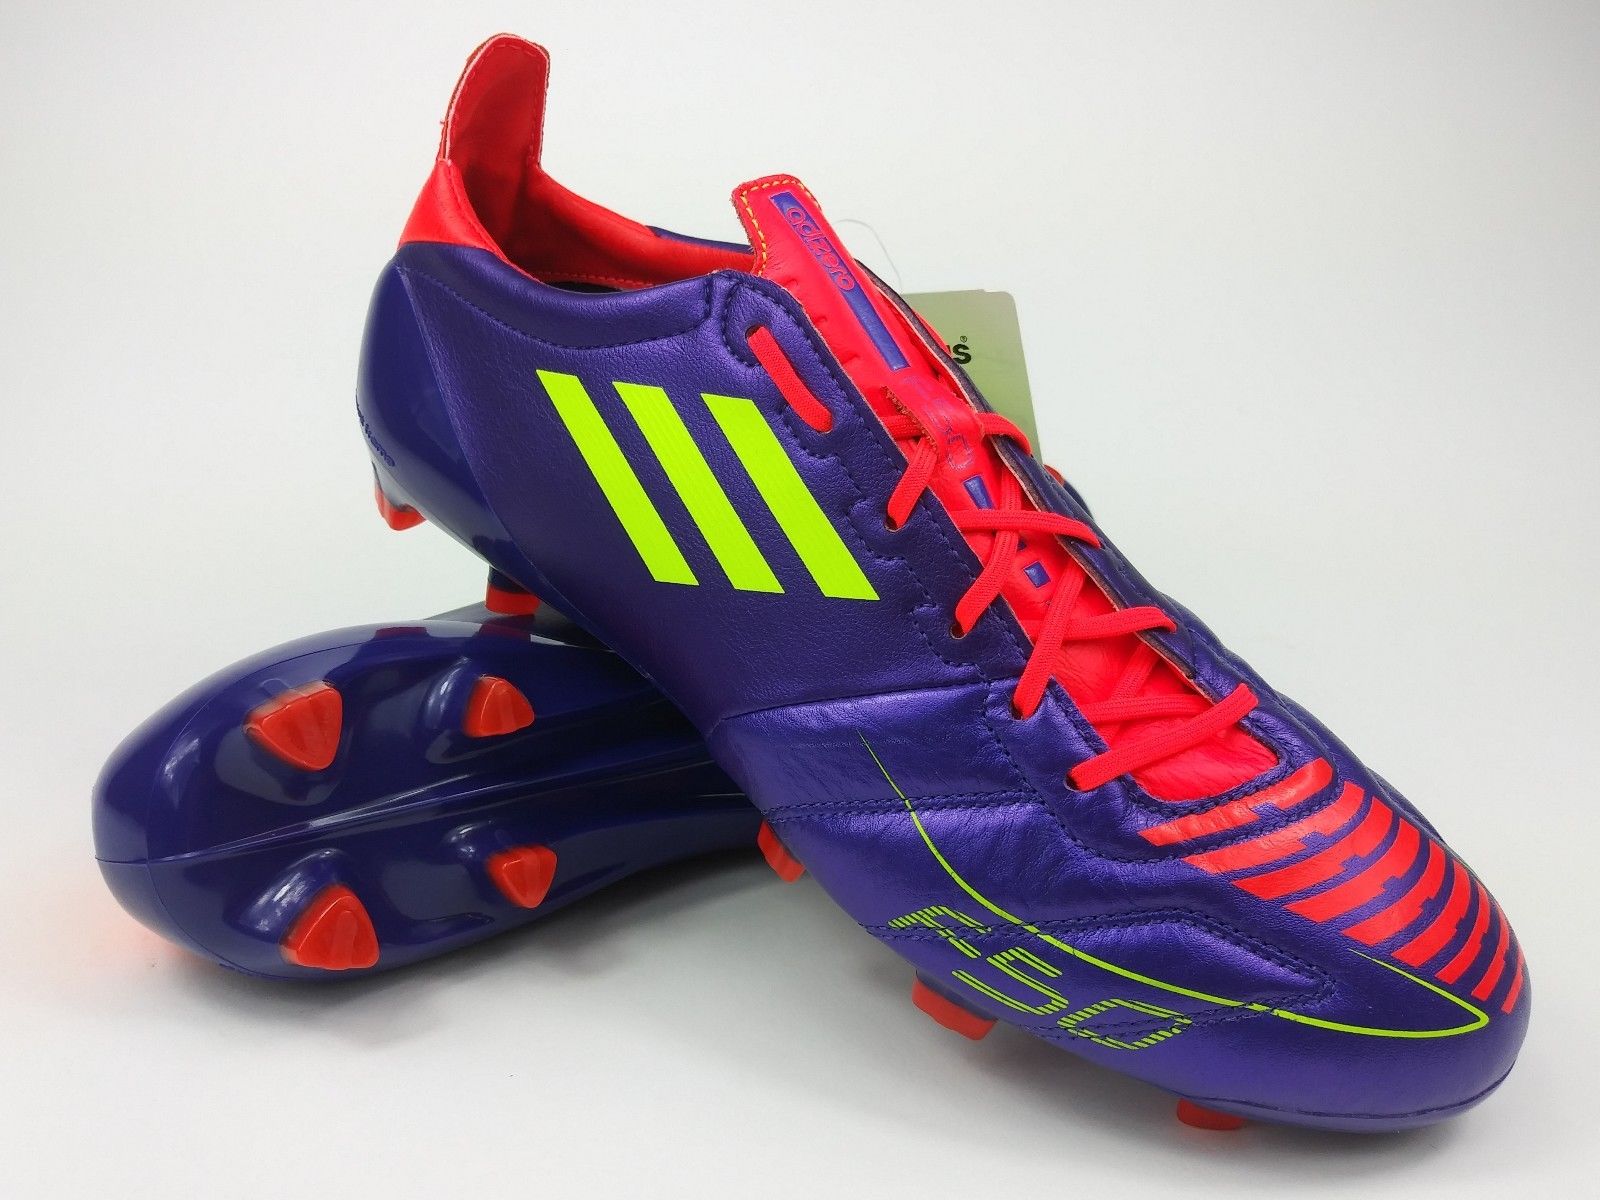 Adidas F50 adizero TRX FG Leather Purple Villegas Footwear